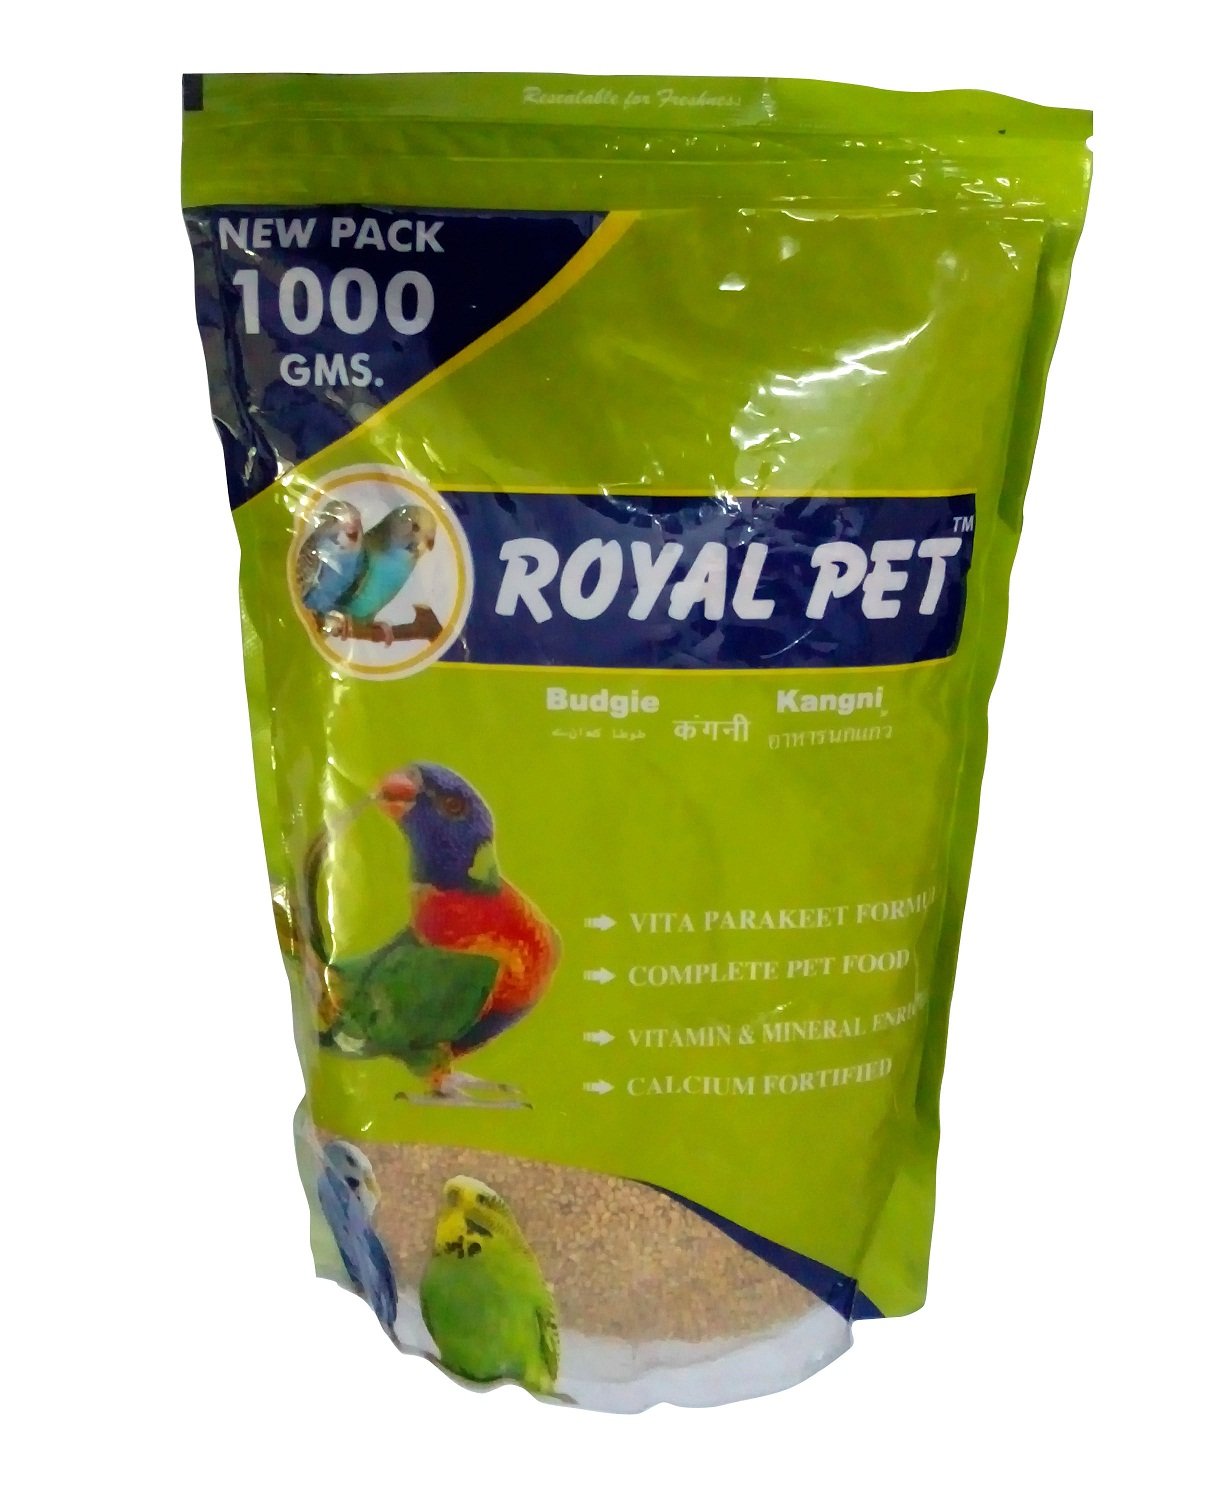 Royal Pet Kangni Bird Food 1000gm